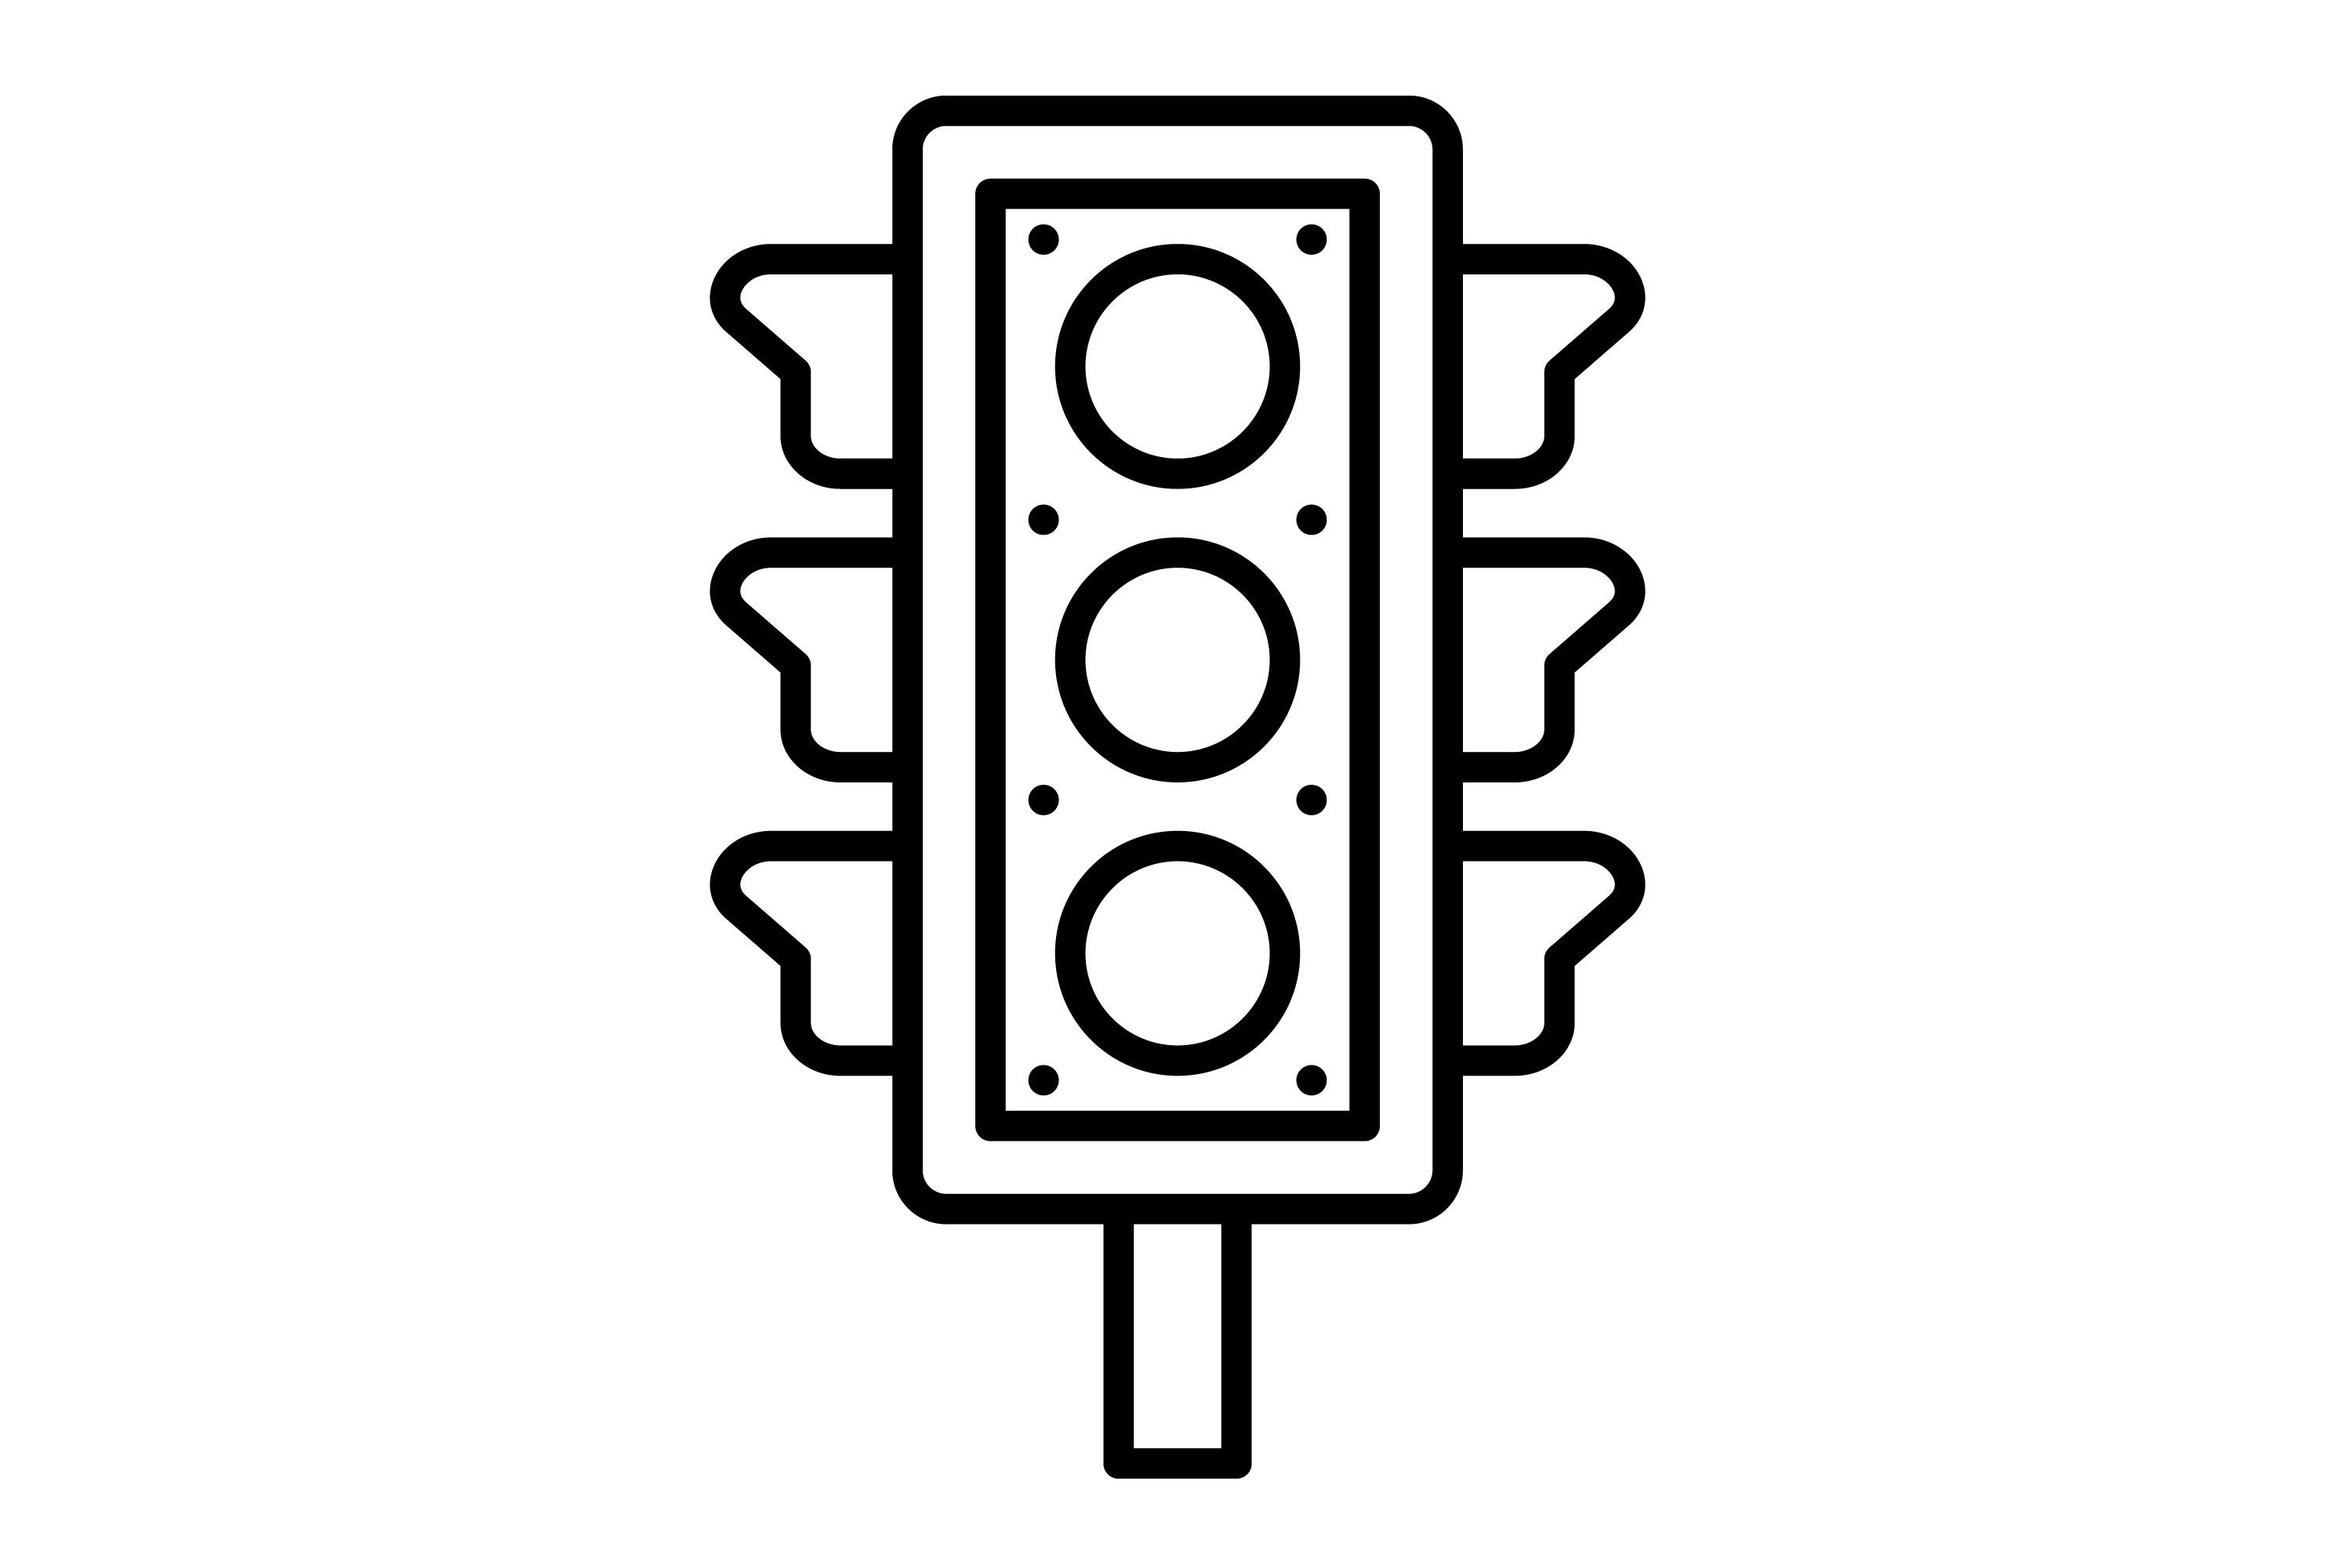 traffic light outline